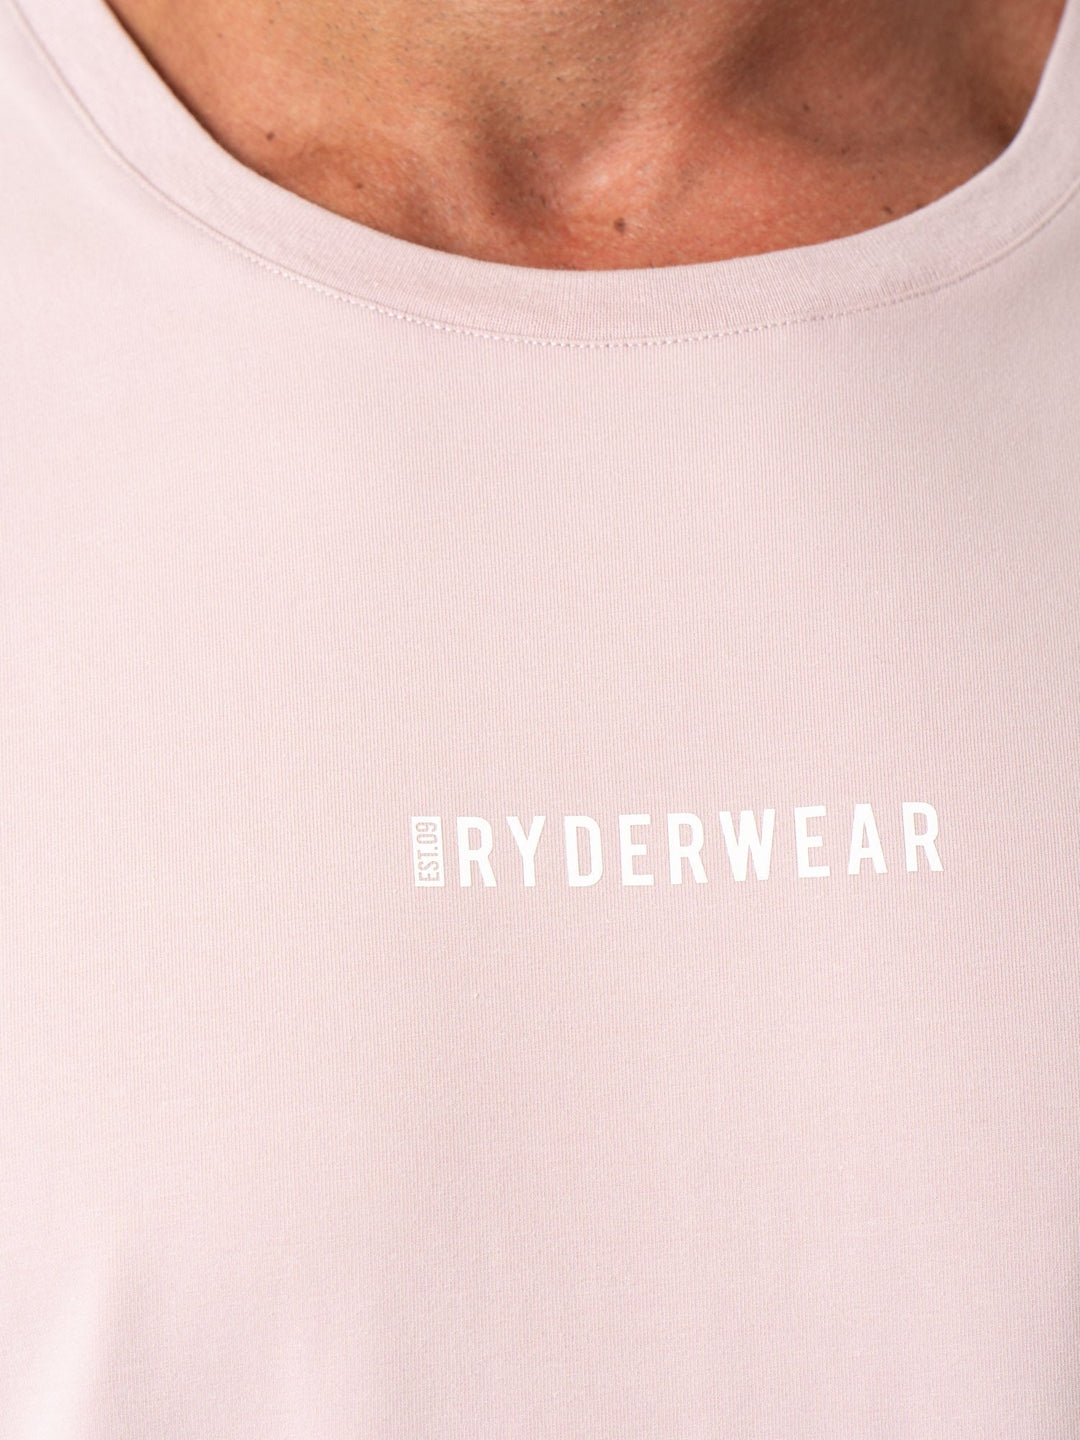 Pursuit Oversized T-Shirt - Cinder Stonewash Clothing Ryderwear 